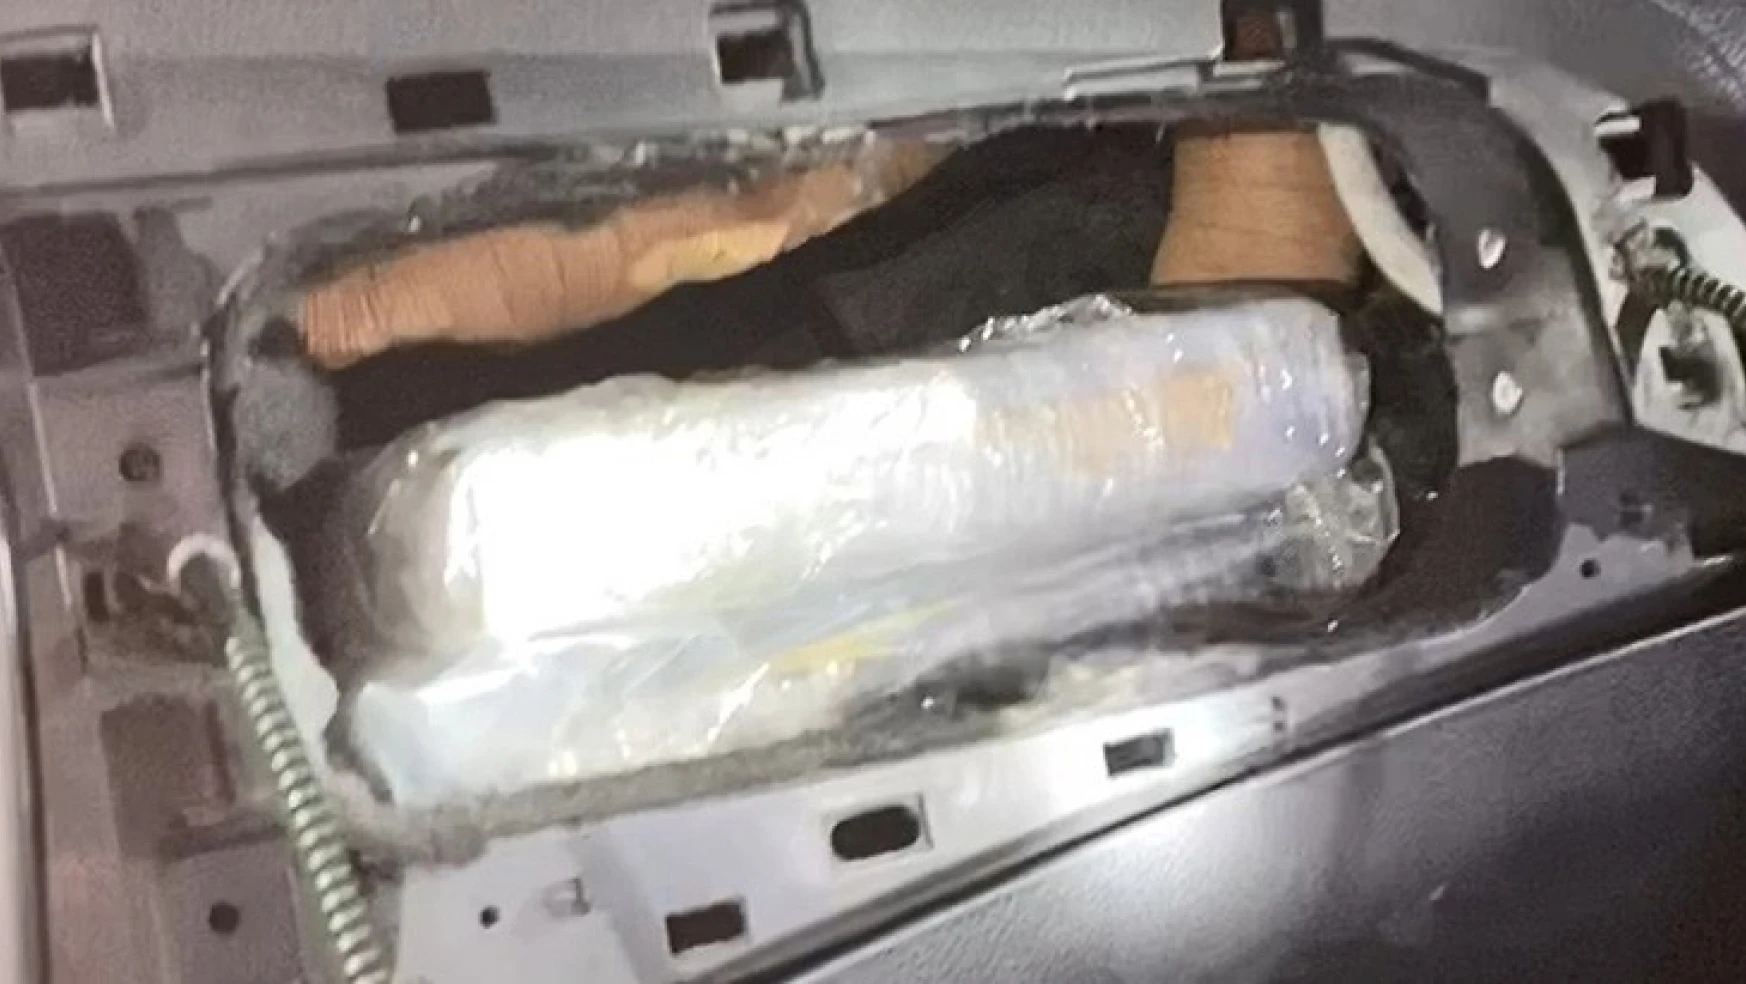 Otomobilin hava yastığı bölümüne gizlenmiş 2 kilogram kokain ele geçirildi